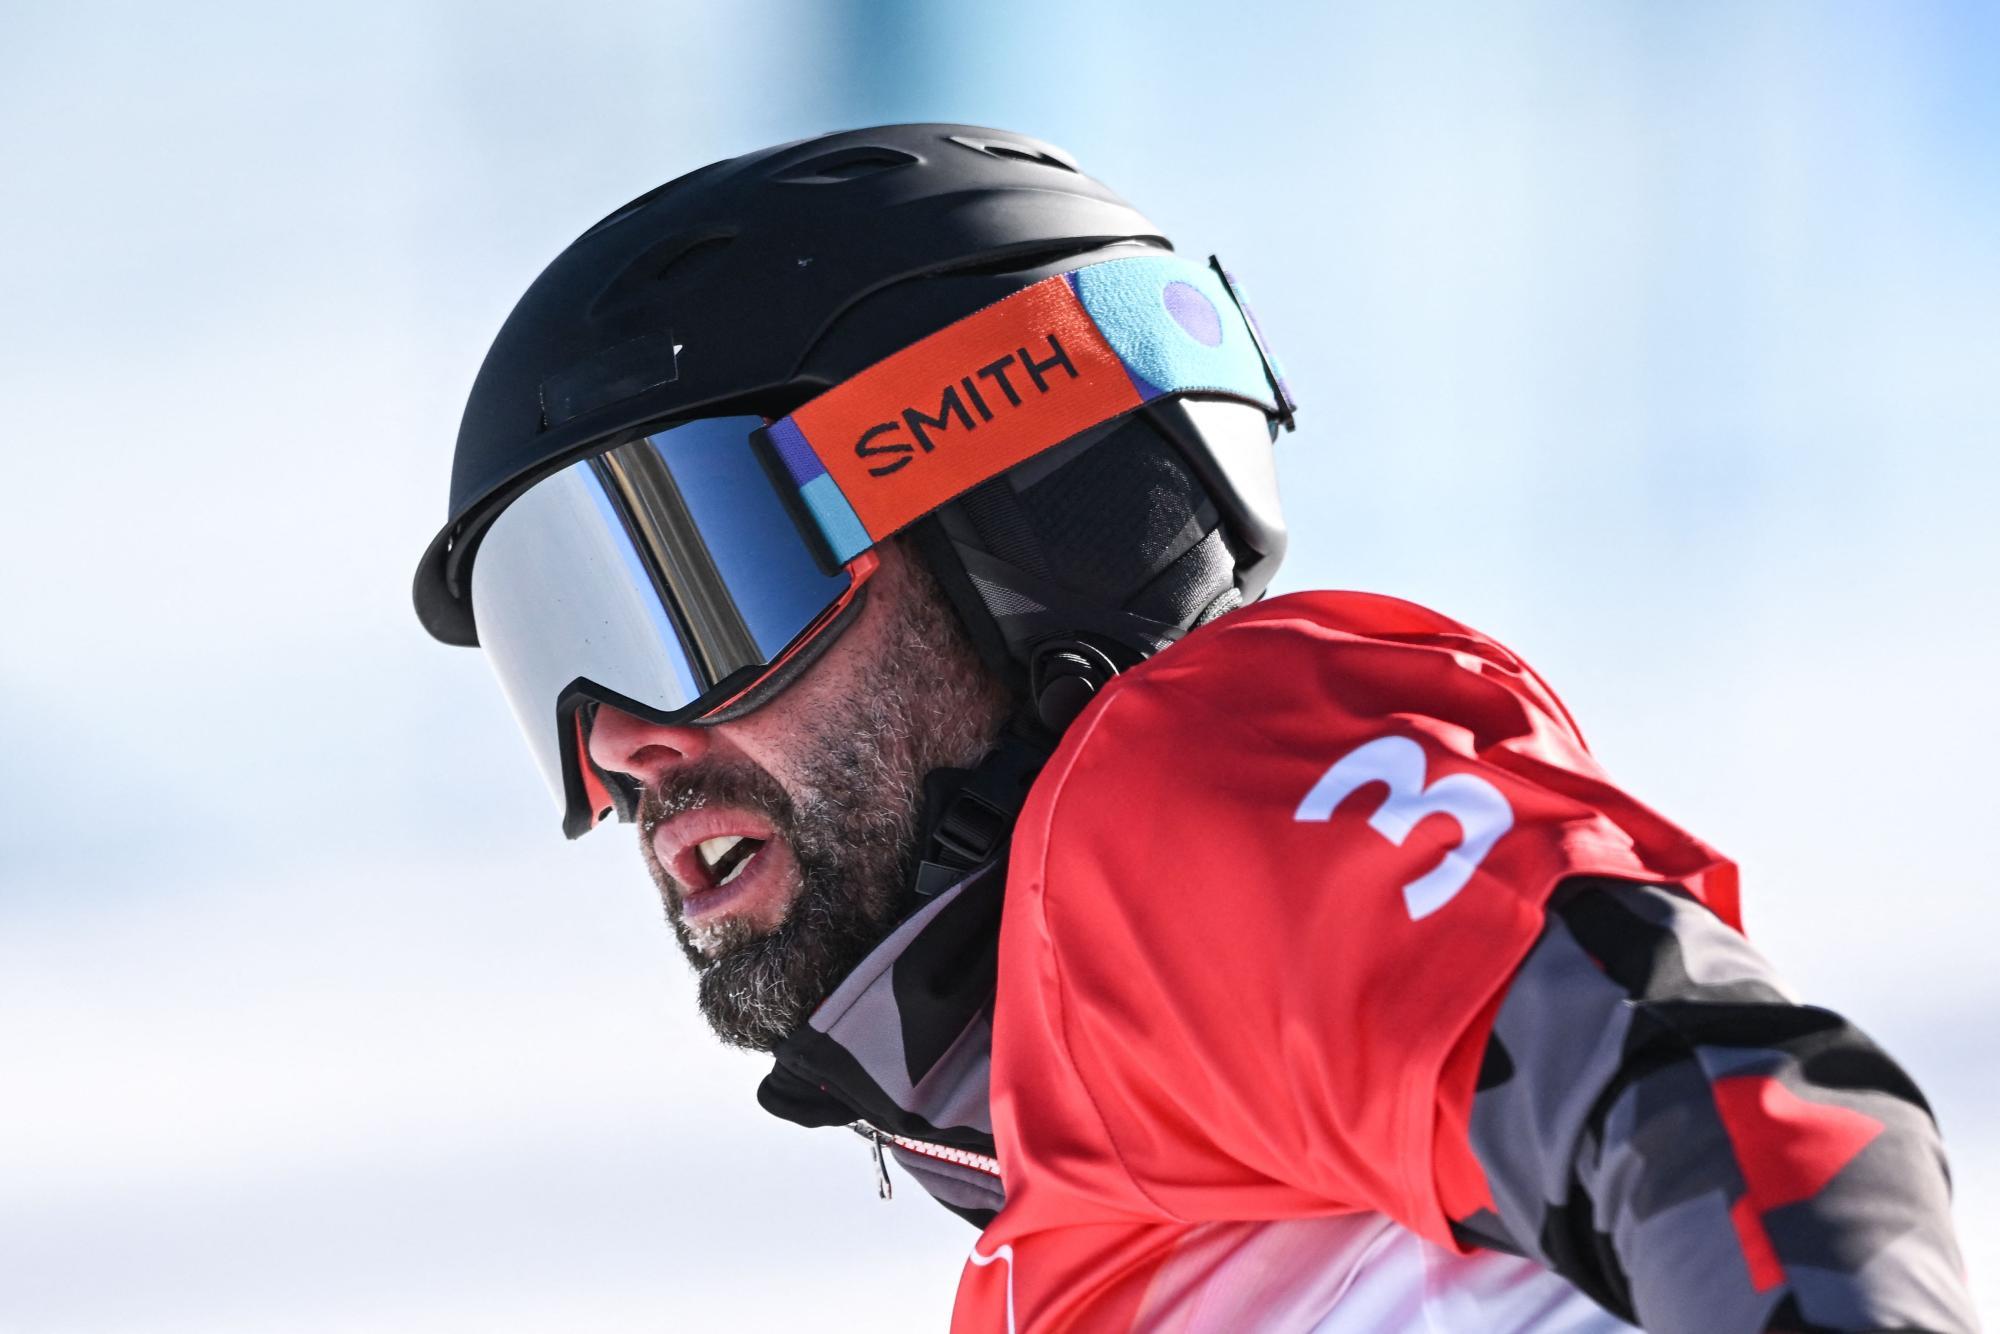 Gold, Silber und Bronze für Österreichs Snowboarder im Parallelslalom